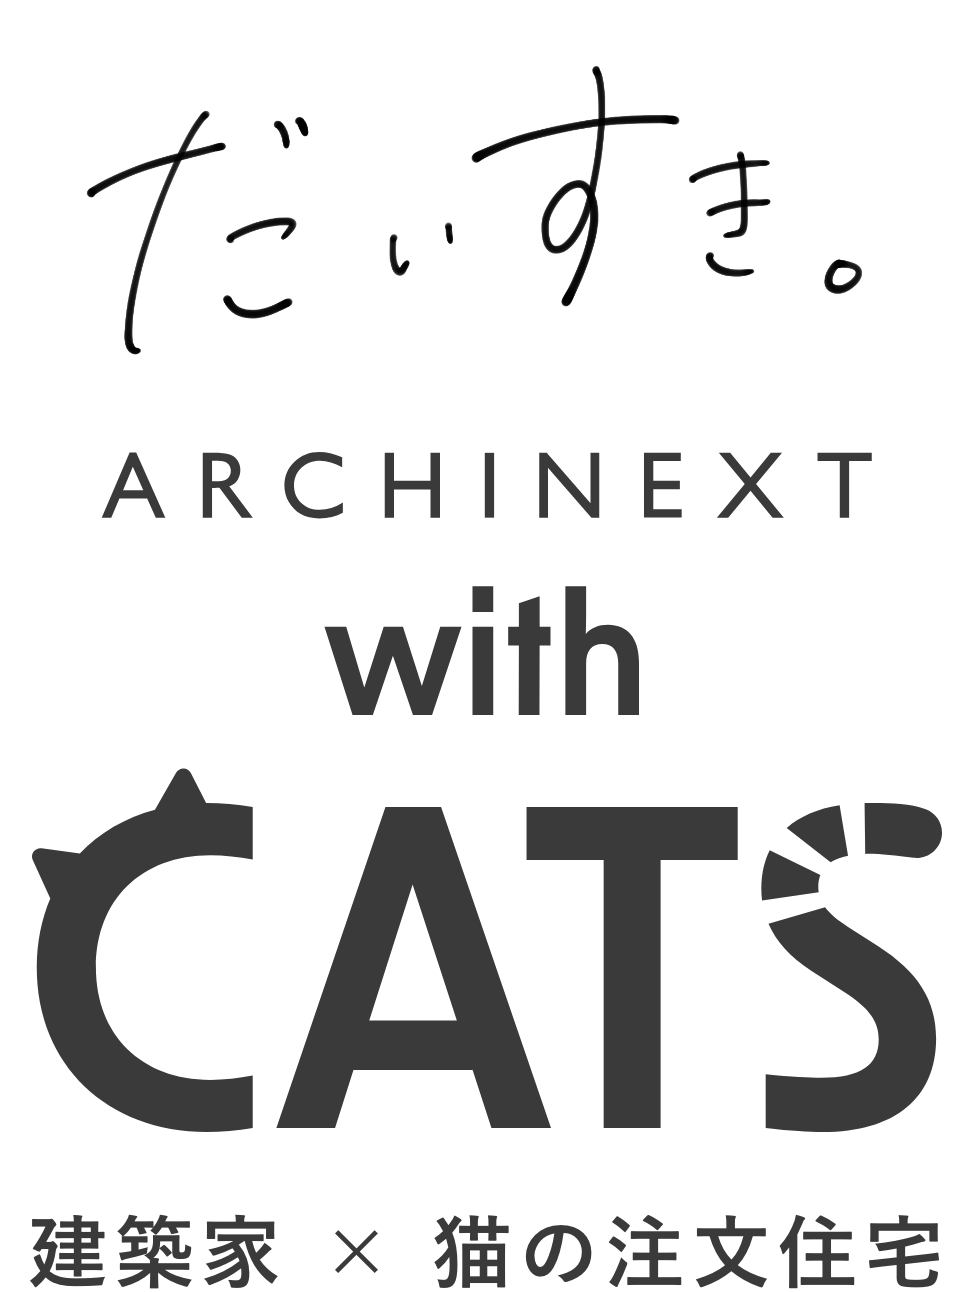 だいすき ARCHITECT with CATS 建築家×猫の注文住宅